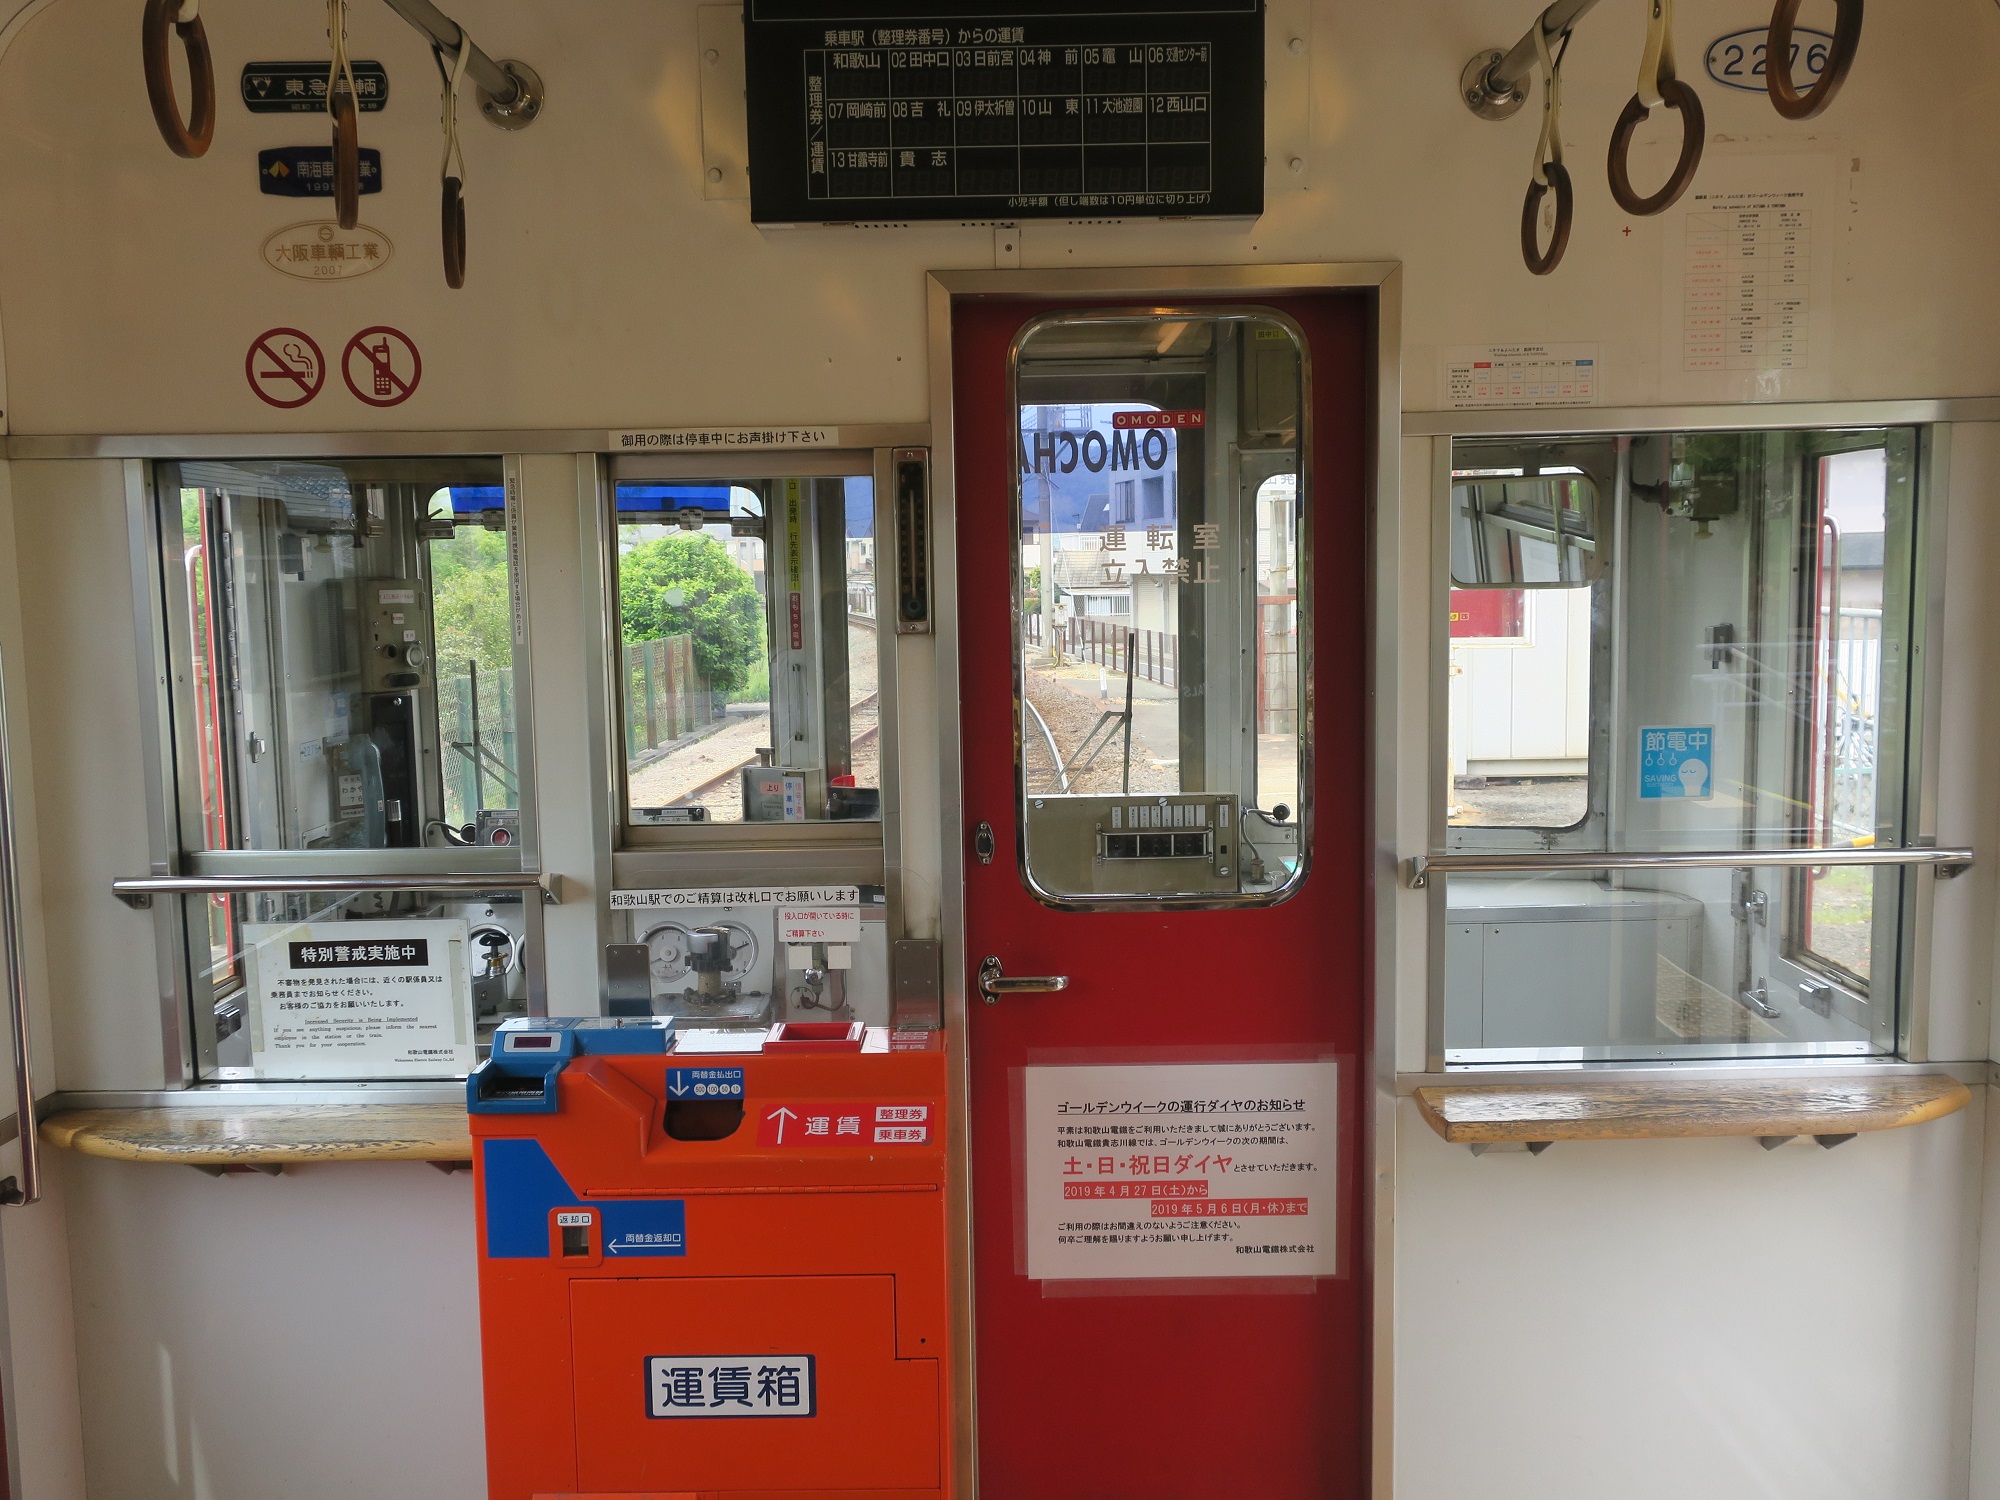 和歌山電鐵貴志川線 2270系 おもちゃ電車 運転台 運賃表示器と運賃箱があります アイプラス店長 キューティー吉本の自由旅行